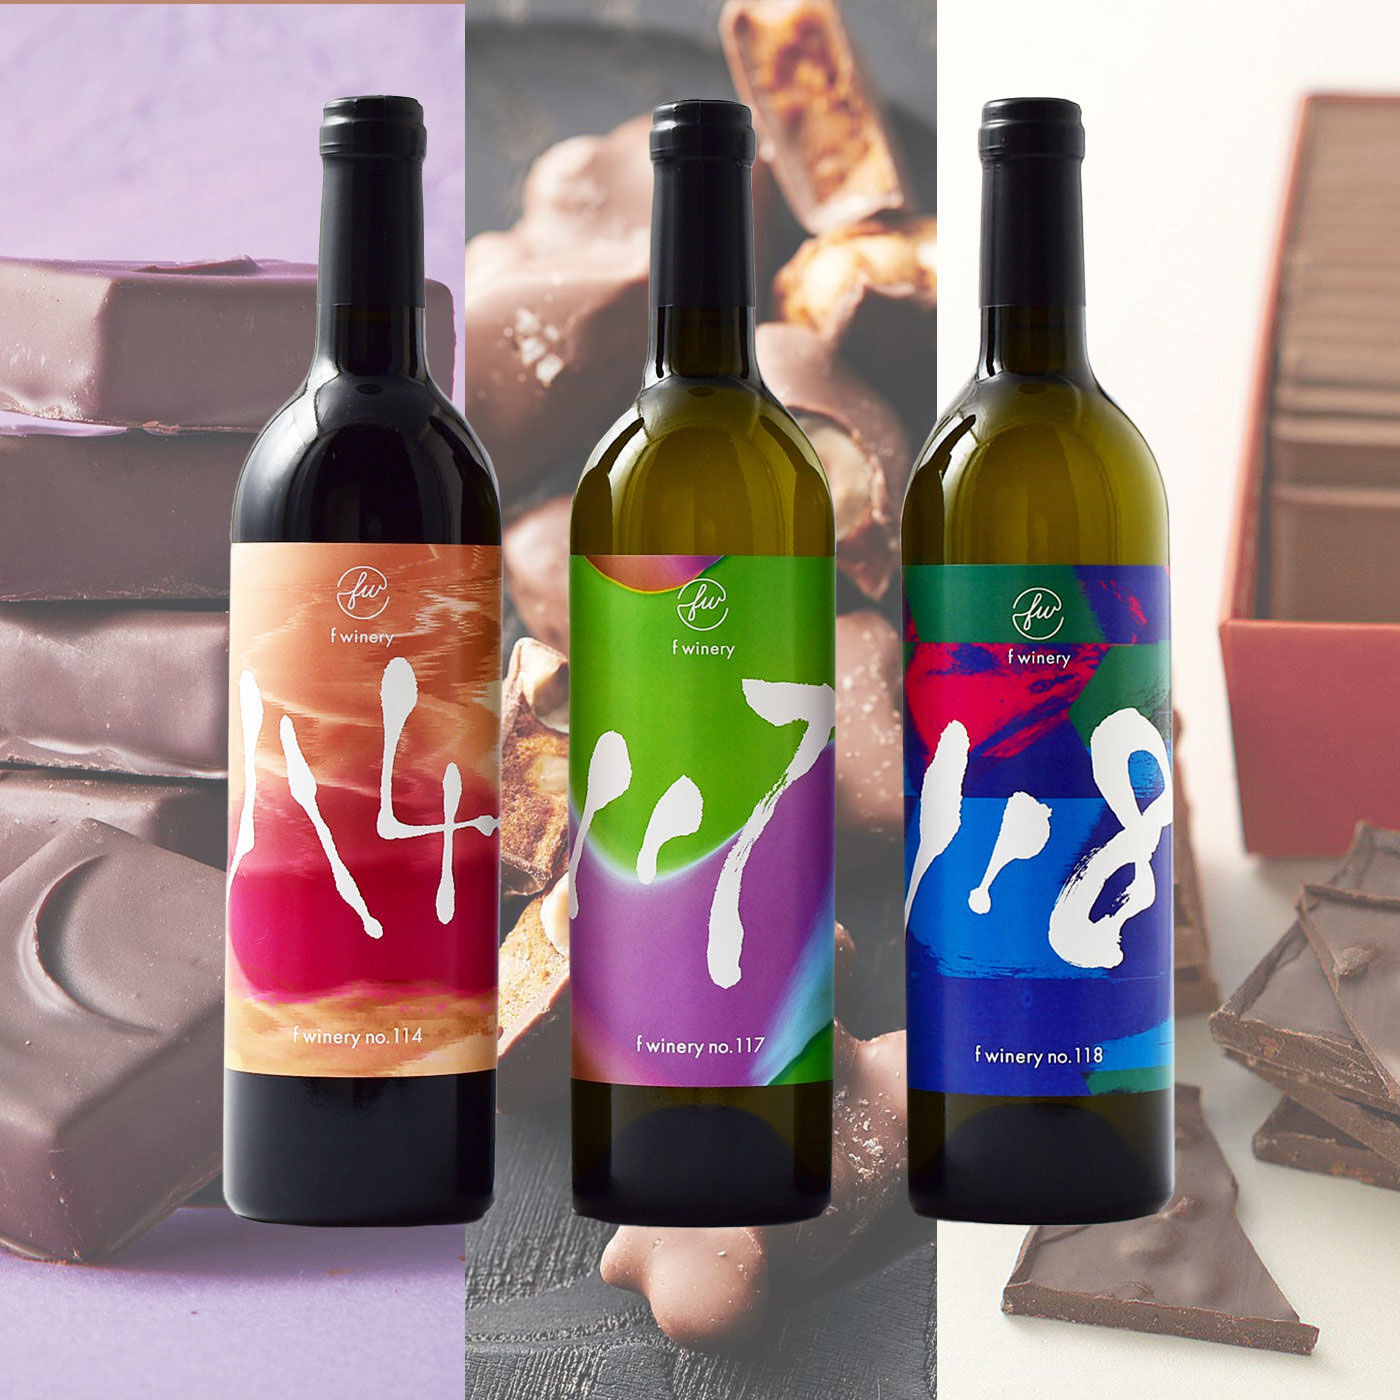 フェリシモコレクション|f winery   フェリシモワイン醸造所   チョコレートと合うワインの会|チョコレートバイヤーみりがセレクトしたチョコレートとの相性も抜群。ダークチョコからミルク、フルーツチョコ、ナッツまで。